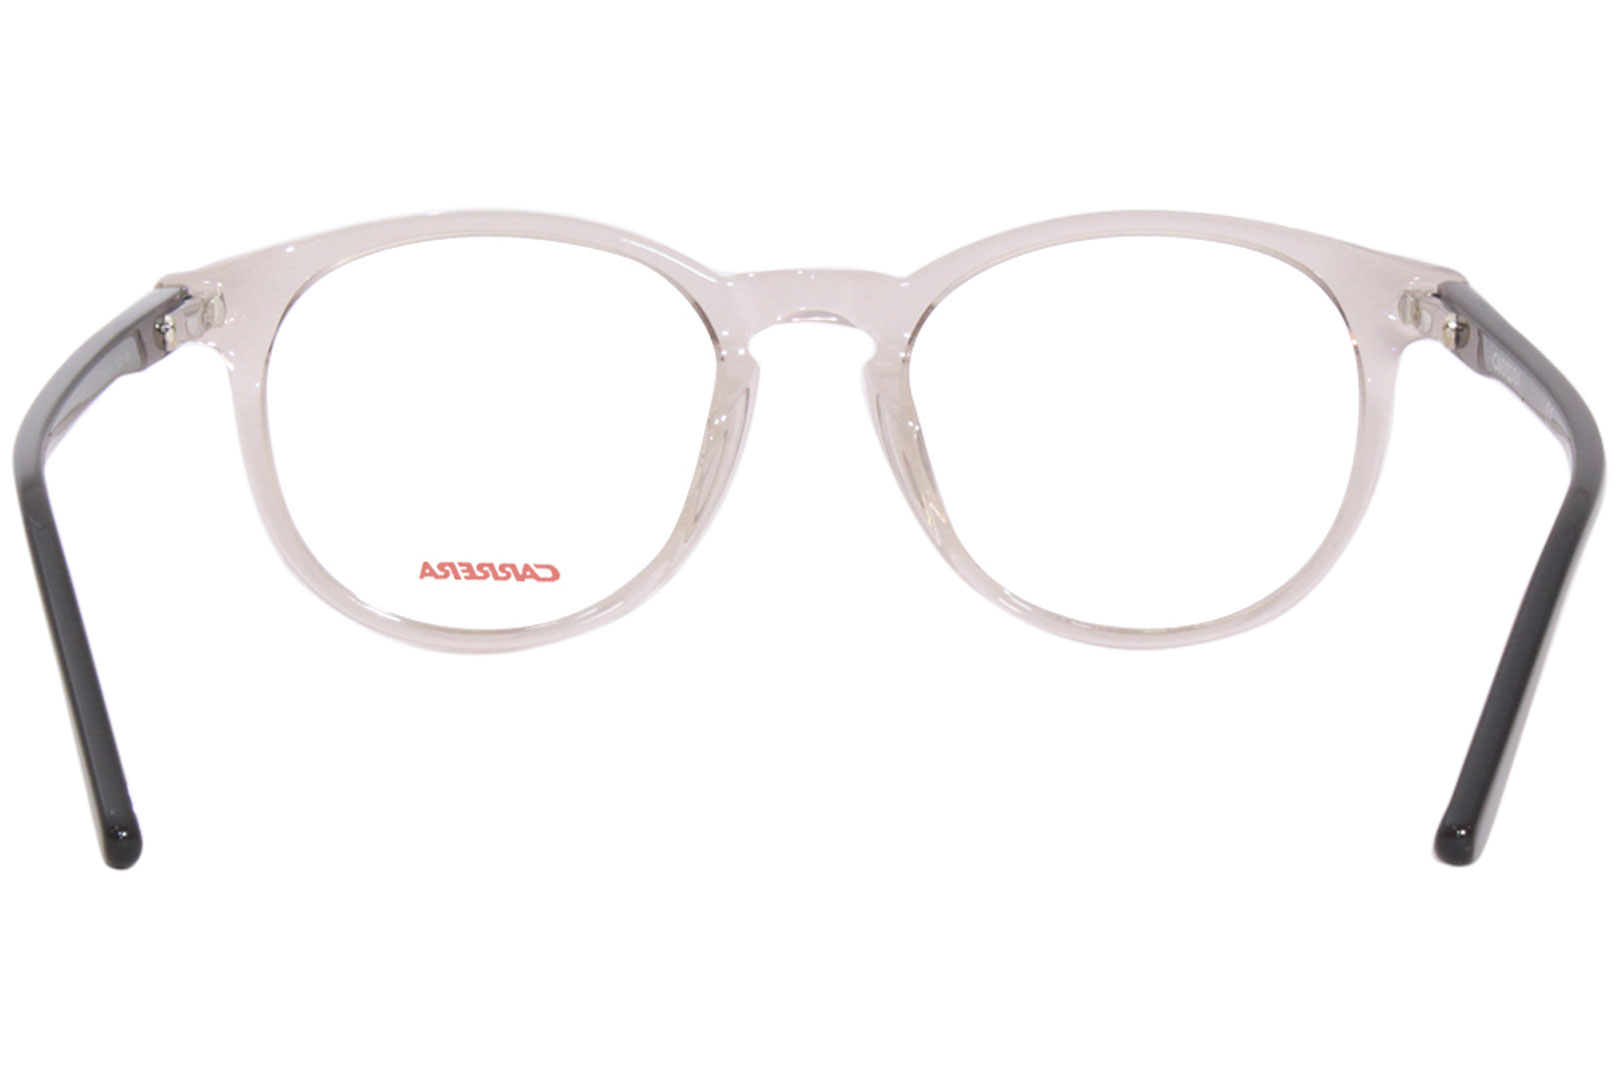 Carrera 6636/N G3D Eyeglasses Men's Dove/Grey/Black Full Rim Oval Shape  49-19 